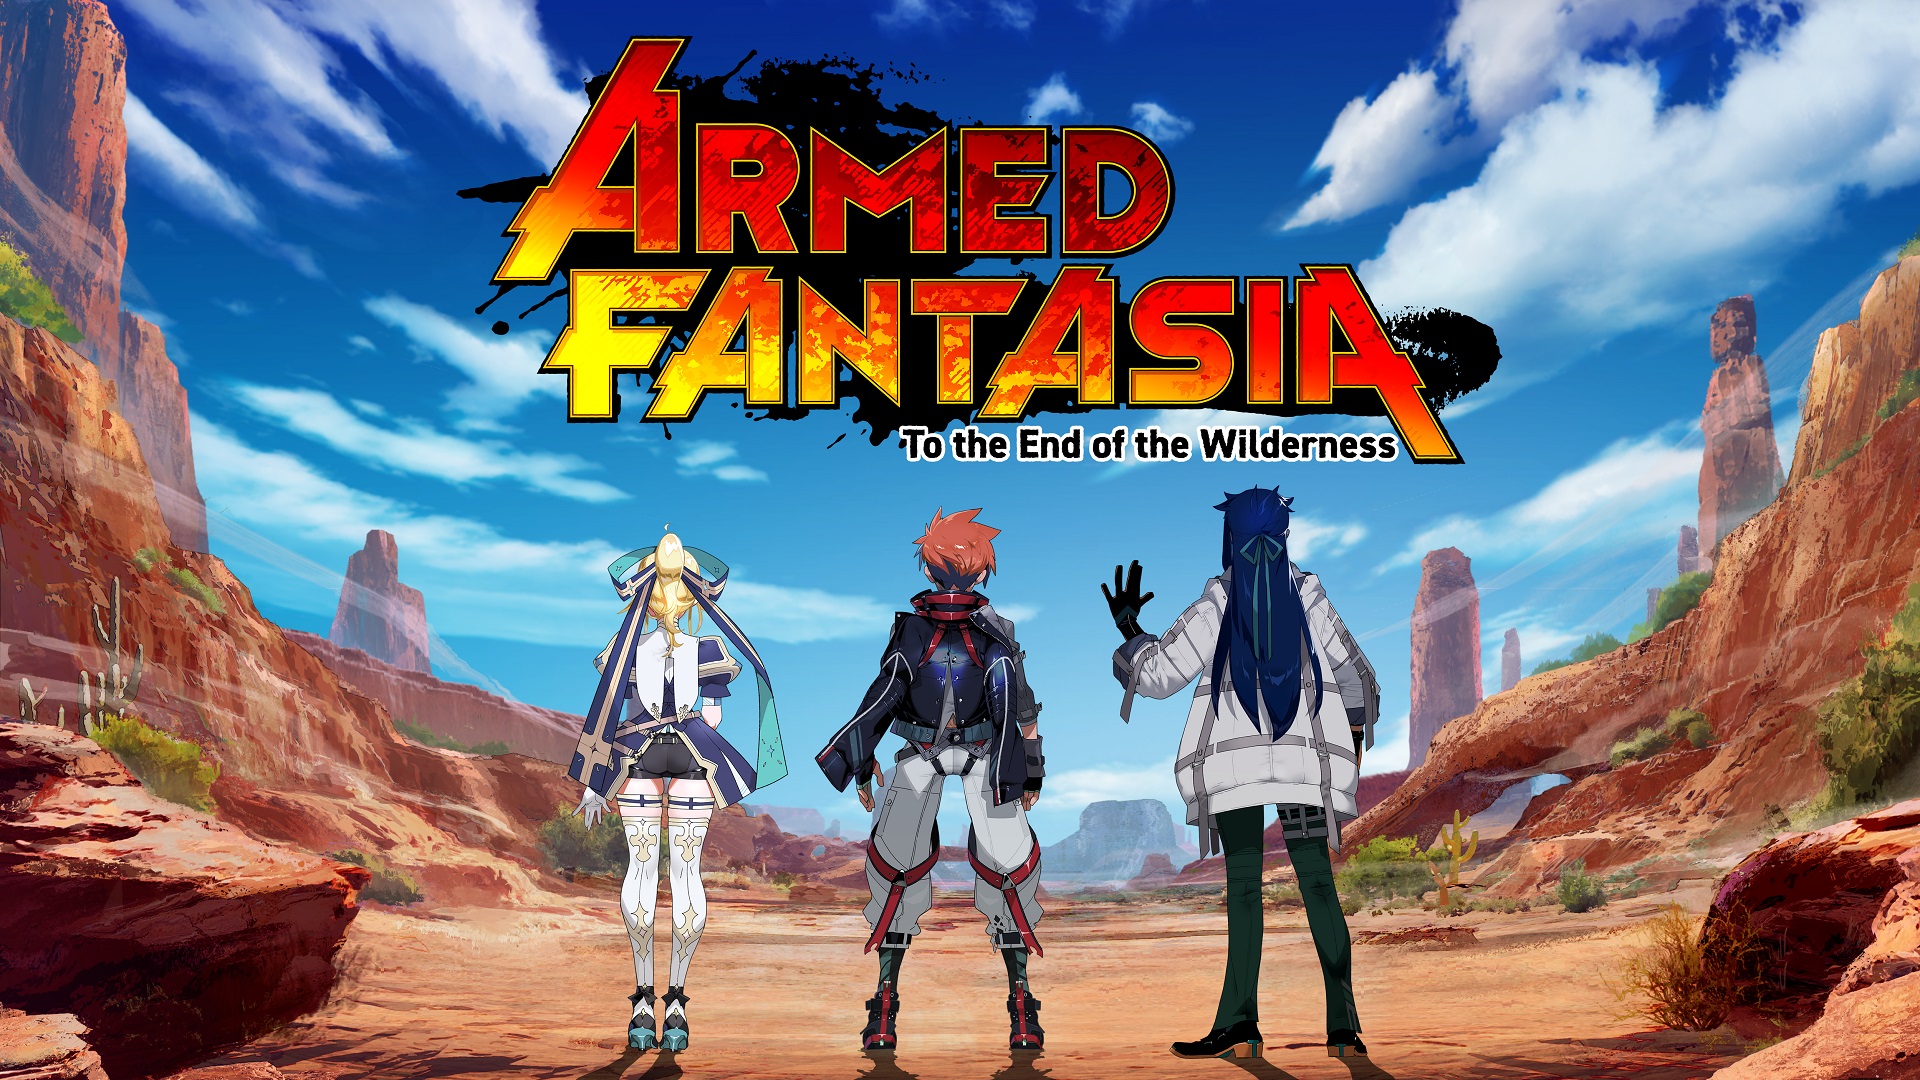 Armed Fantasia